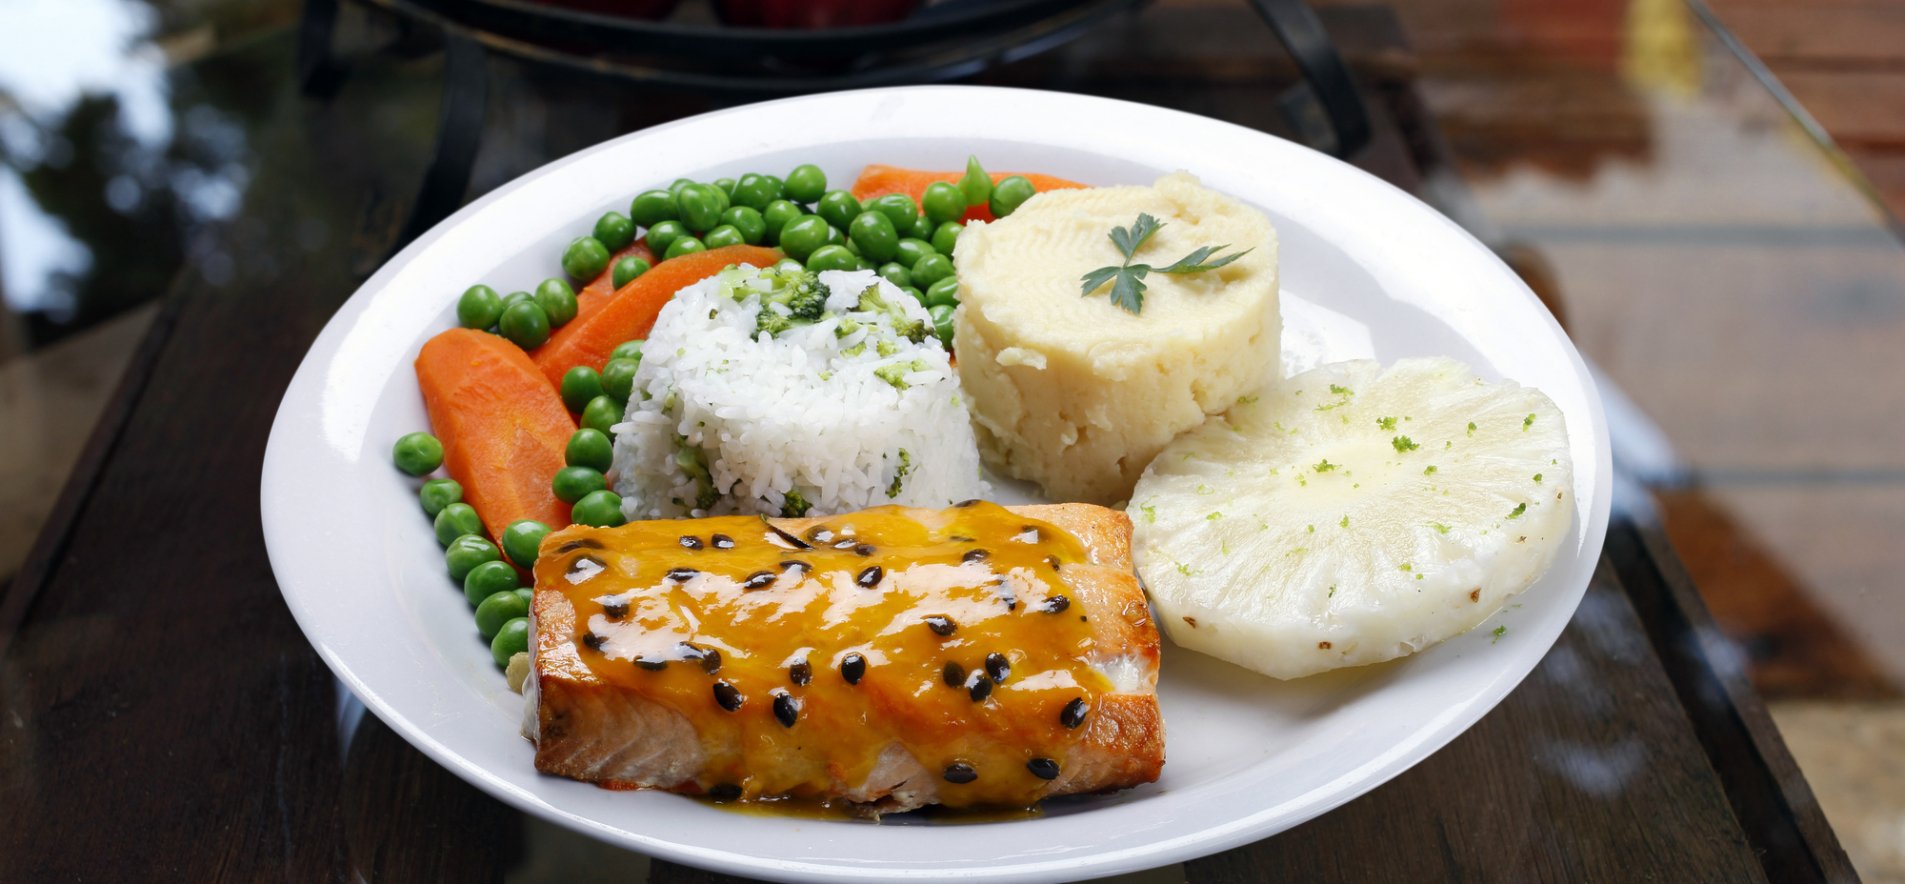 Риба з овочами і рисом